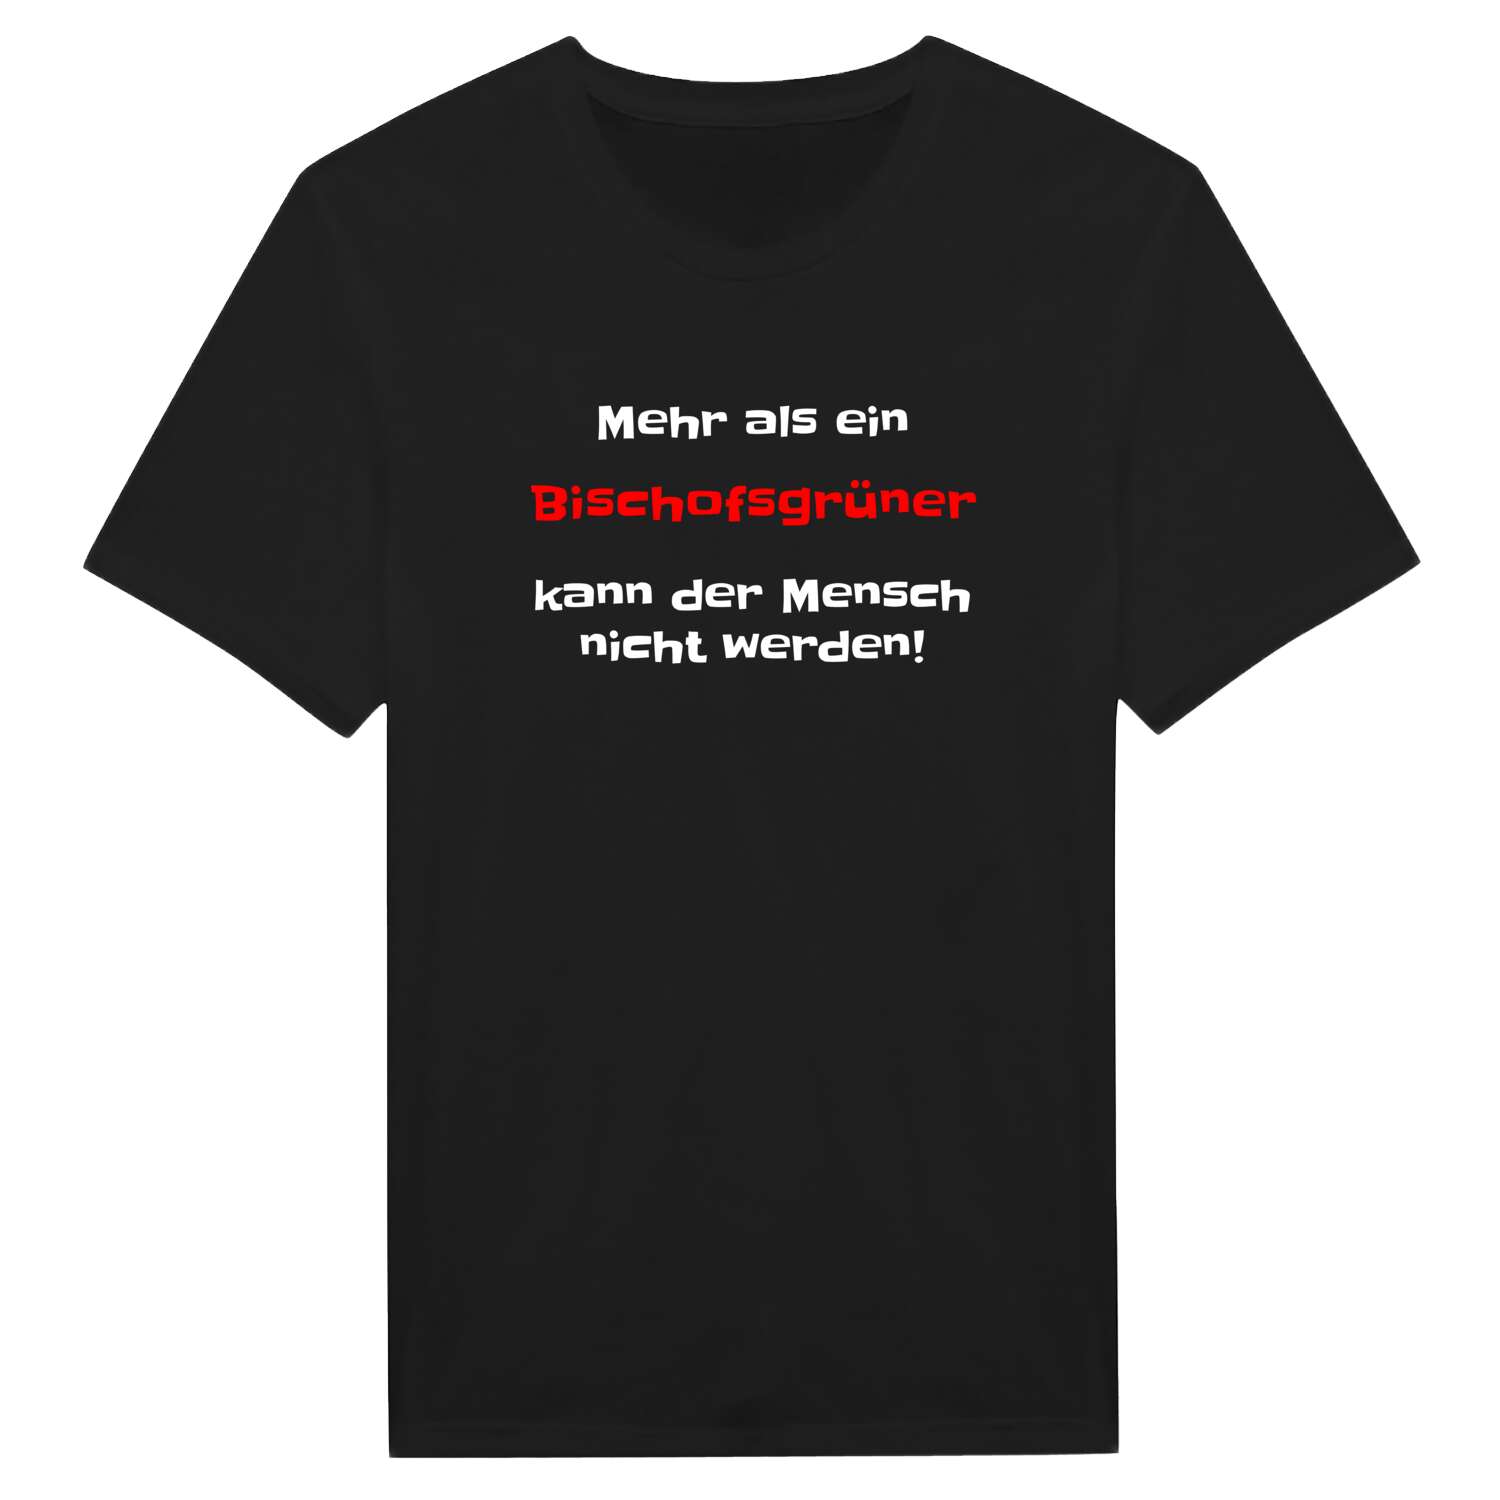 Bischofsgrün T-Shirt »Mehr als ein«